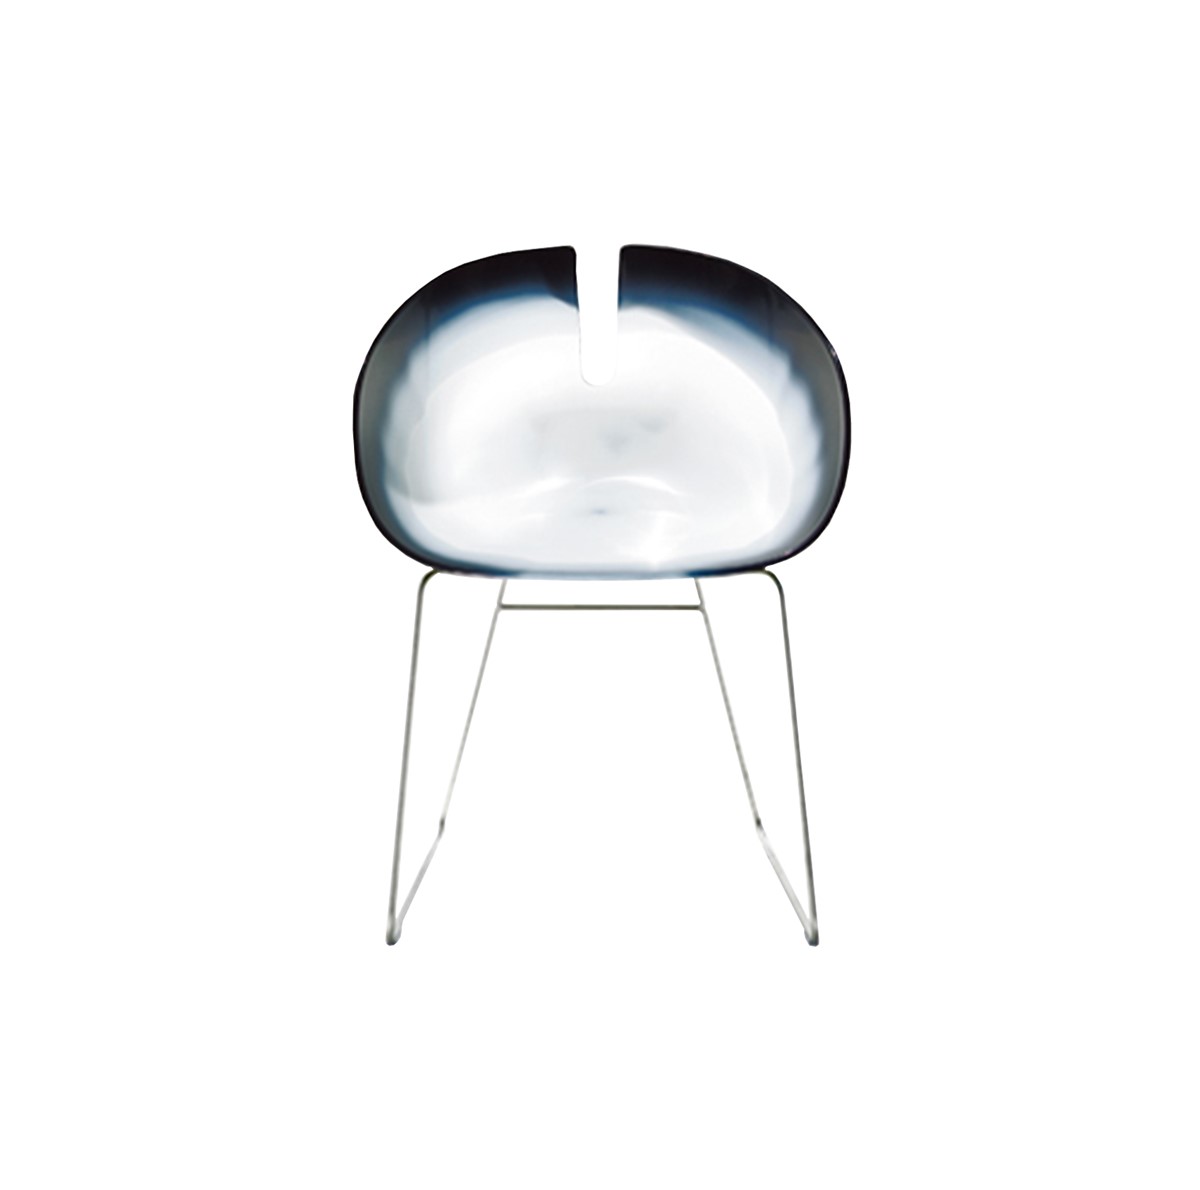 Moroso-Patricia-Urquiola-Fjord-H-Chair-Matisse-1